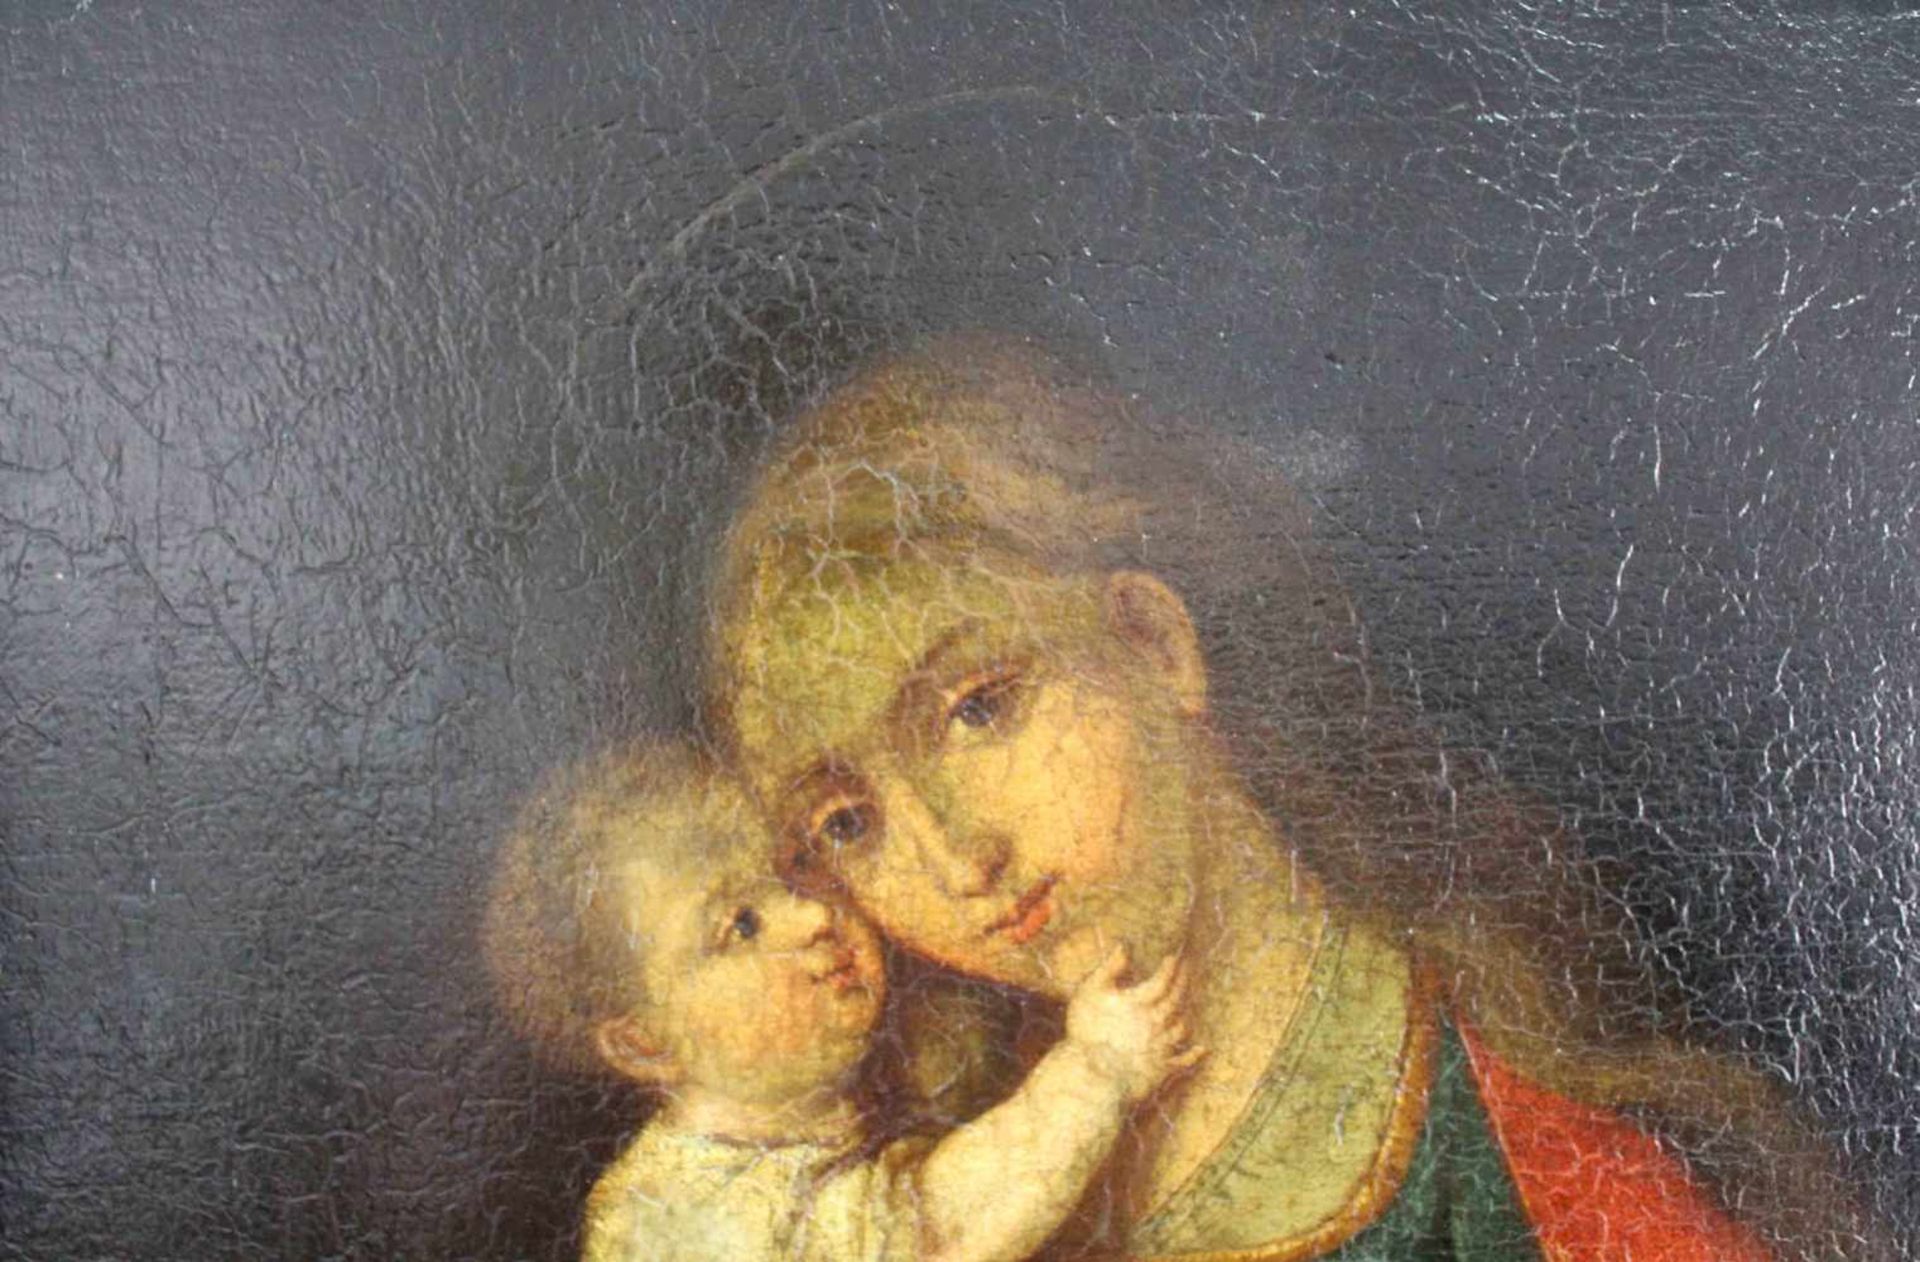 UNSIGNIERT (XVIII). Maria mit Jesus.66 cm x 54 cm. Öl auf Leinwand, u. a. doubliert. Keine - Image 3 of 7